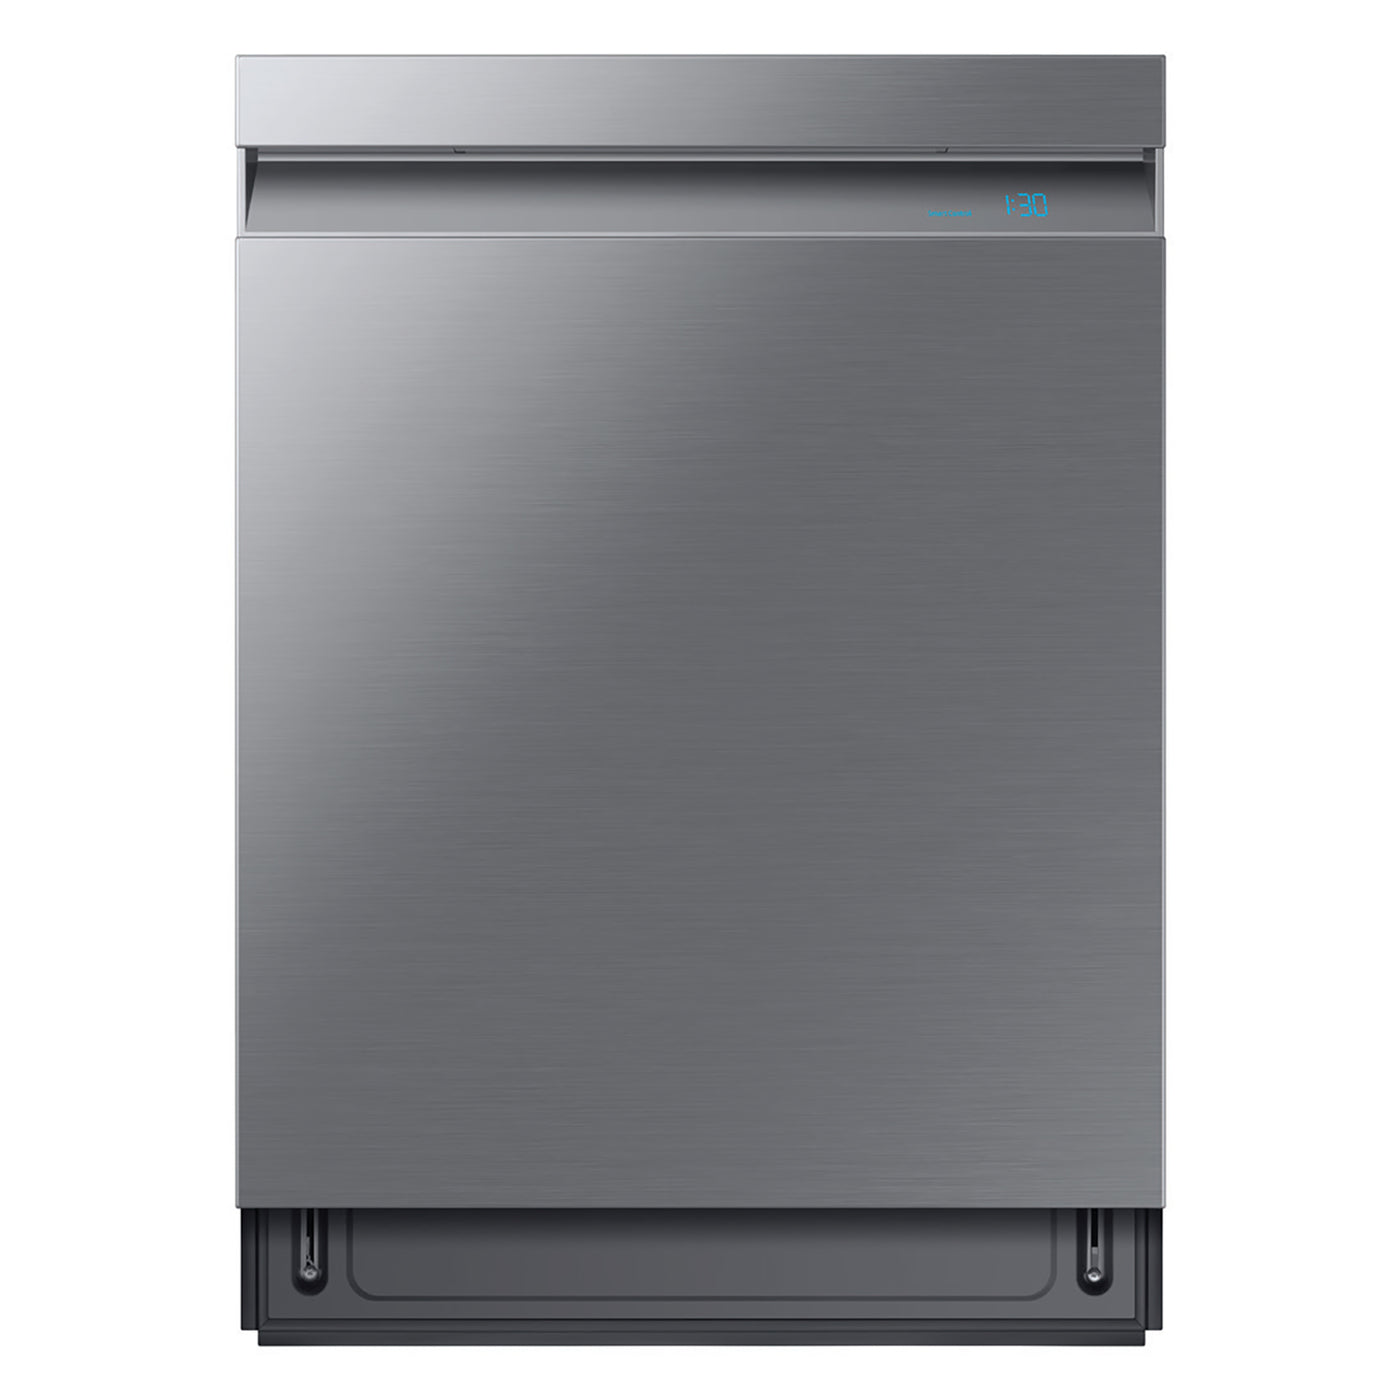 Samsung Linear Wash 39 dBA Dishwasher